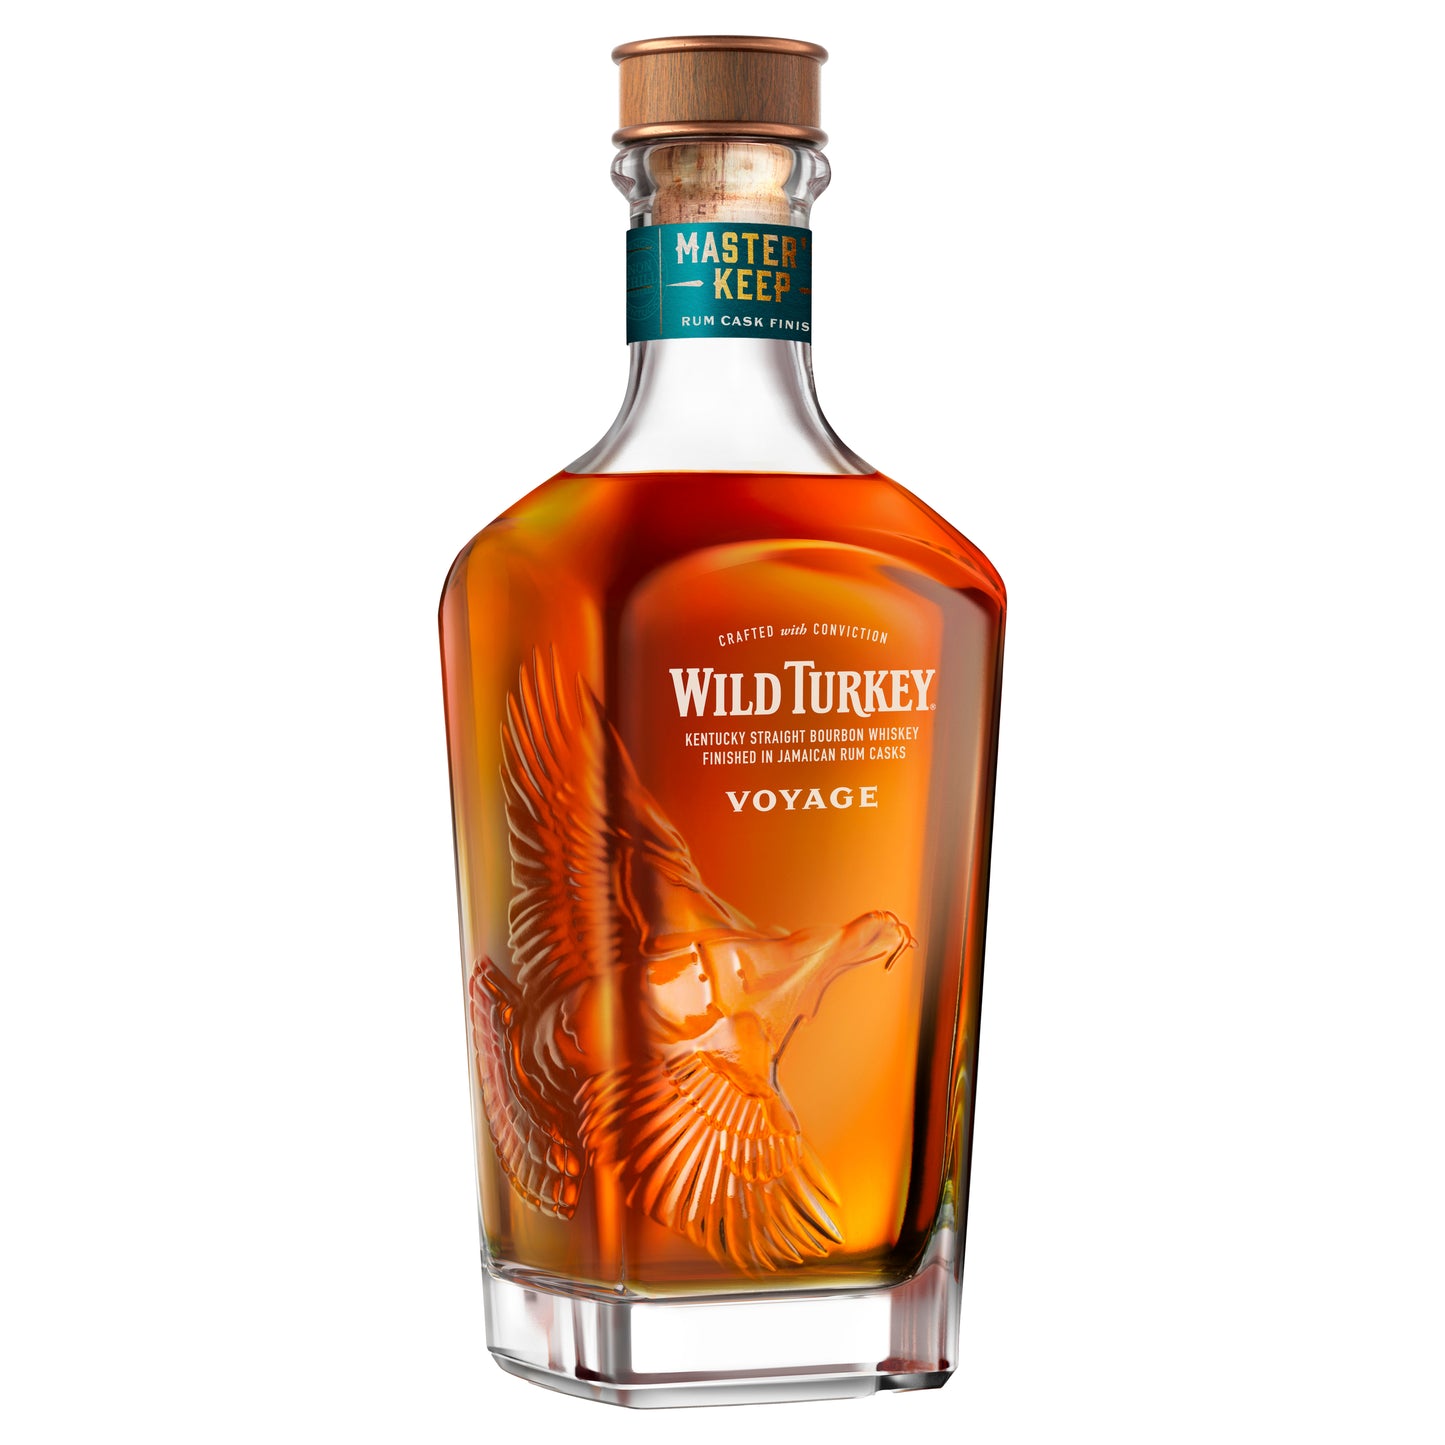 Wild Turkey Master's Keep Voyage Kentucky Straight Bourbon 750ml